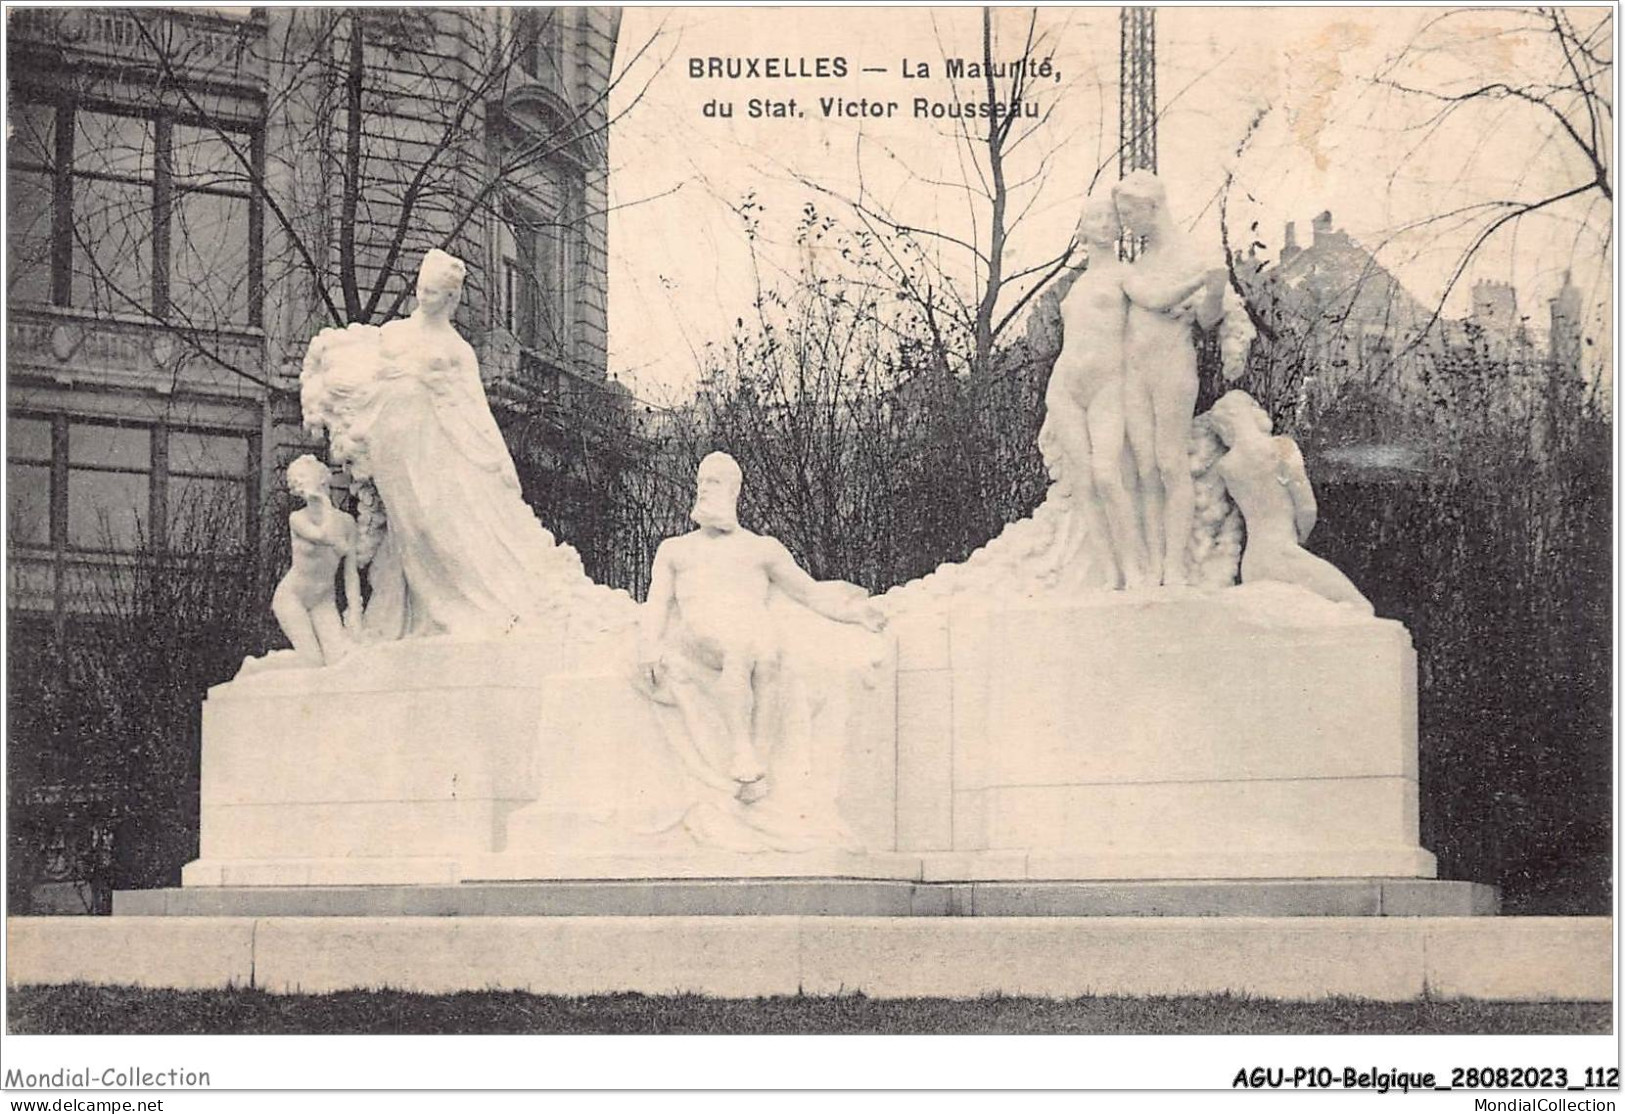 AGUP10-0865-BELGIQUE - BRUXELLES - La Maturité Du Stat - Victor Rousseau - Monuments, édifices